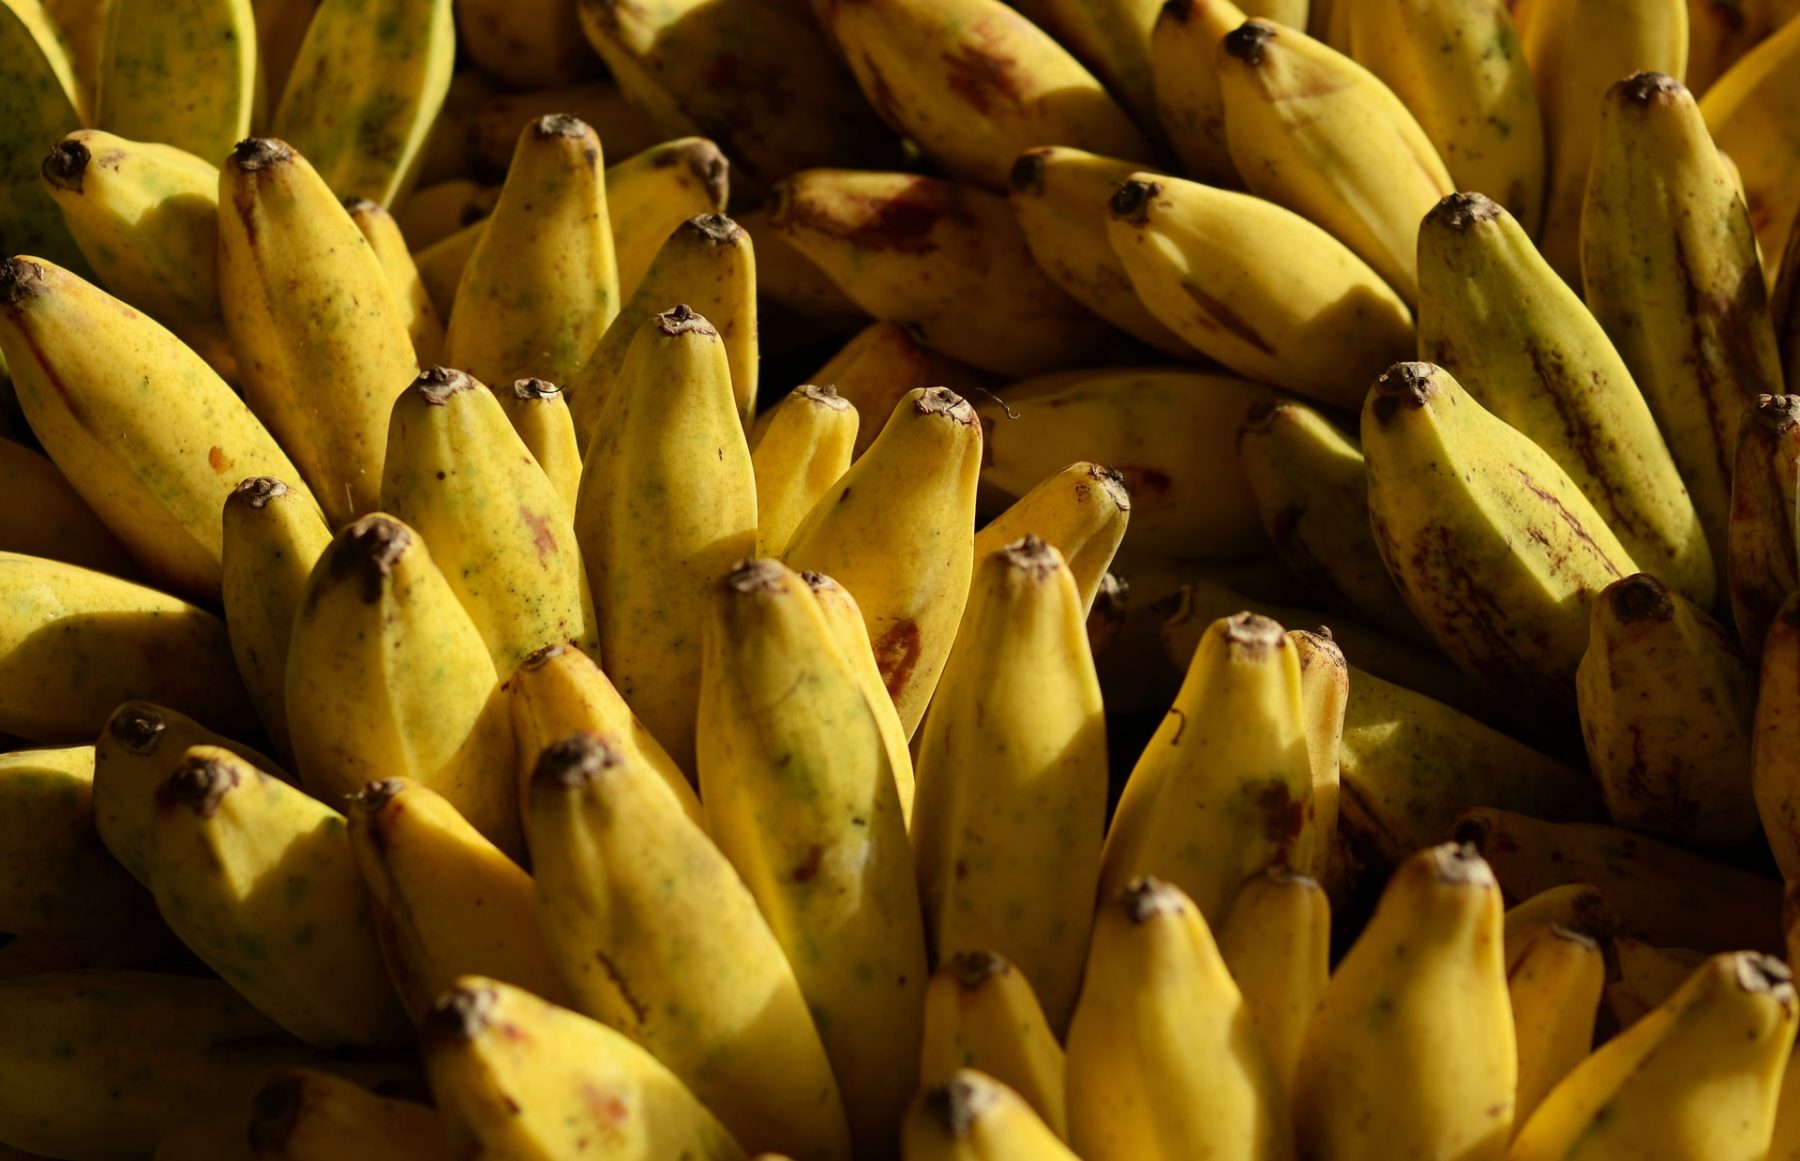 Μπανάνα Γουατεμάλα: Μια διαφορετική συνταγή για υγιεινό γλυκό με άρωμα Λατινικής Αμερικής